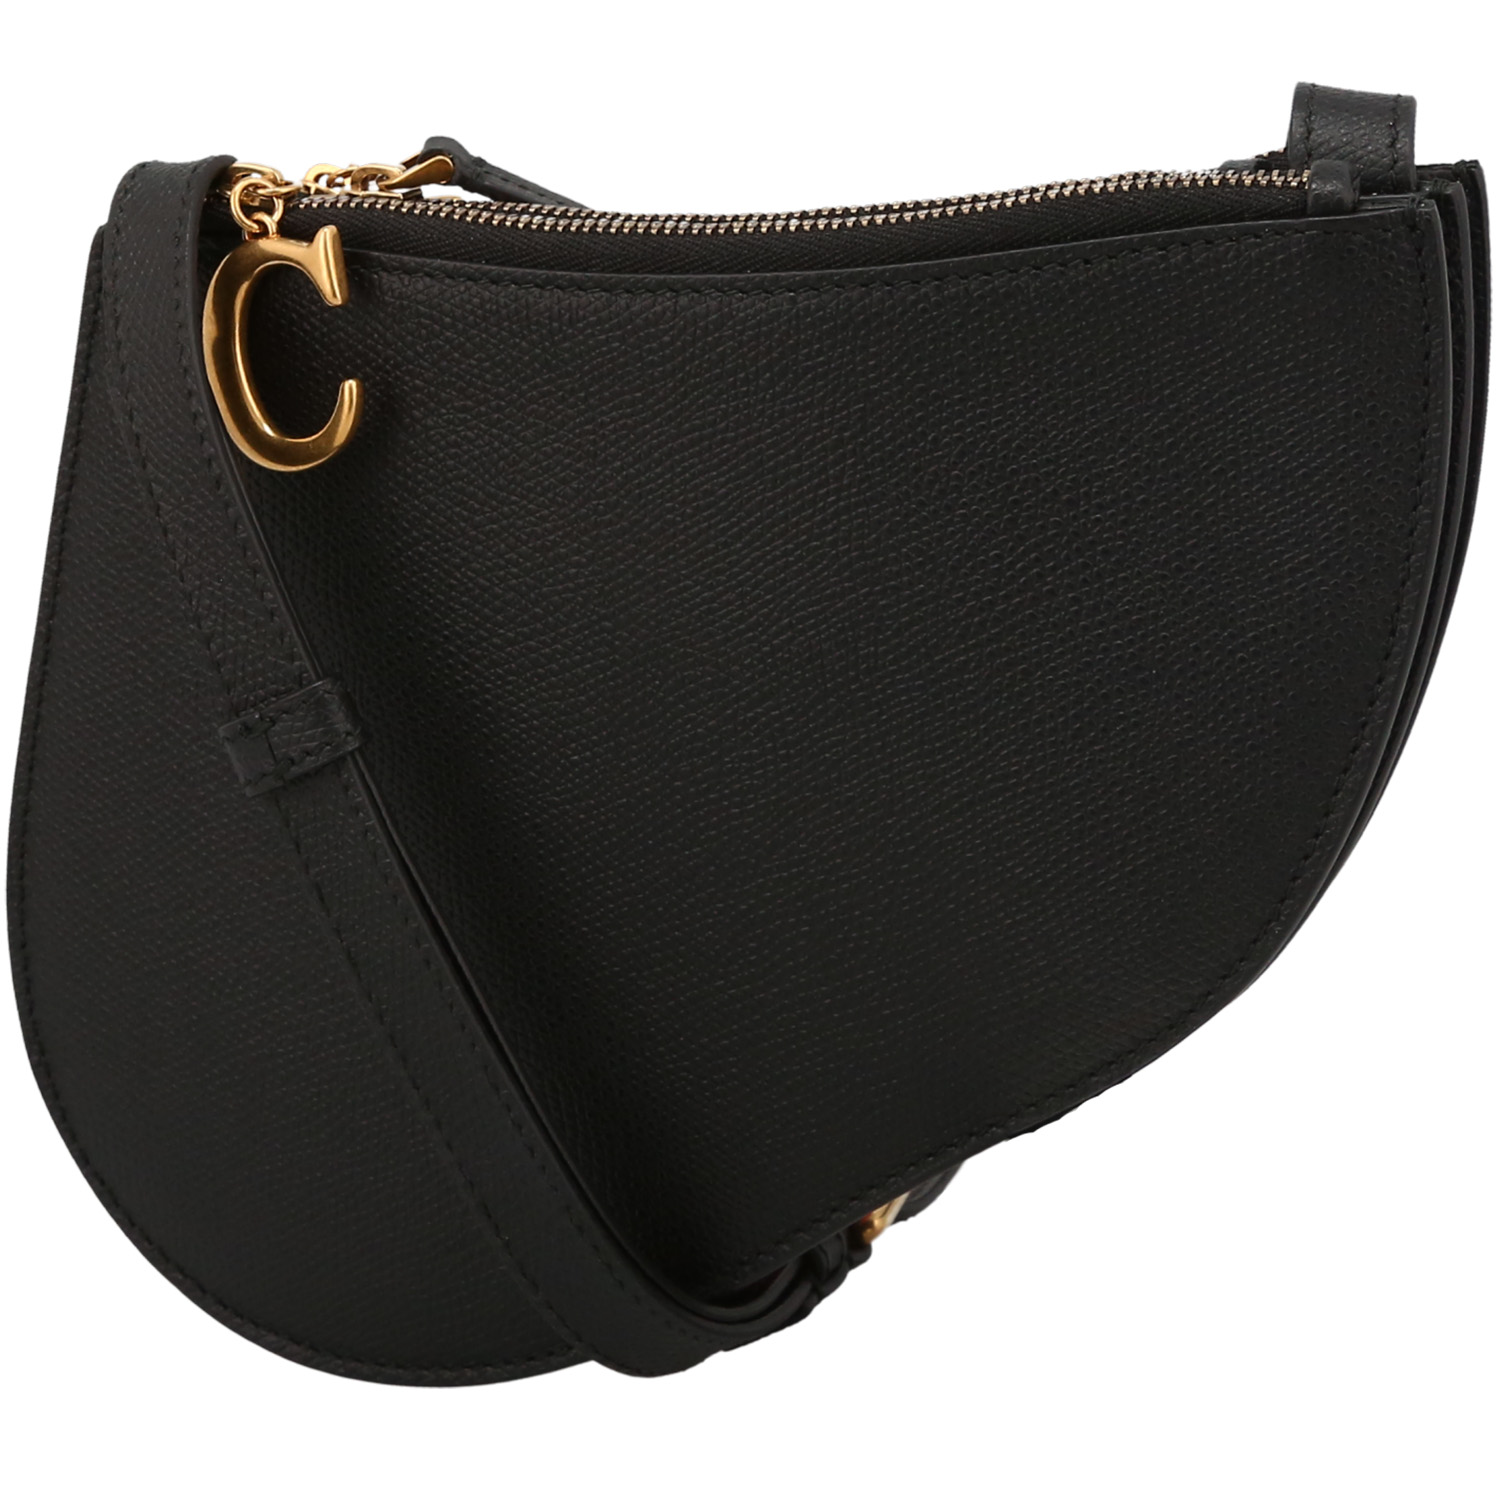 Dior  Pochette Saddle shoulder bag  in black leather - 00pp